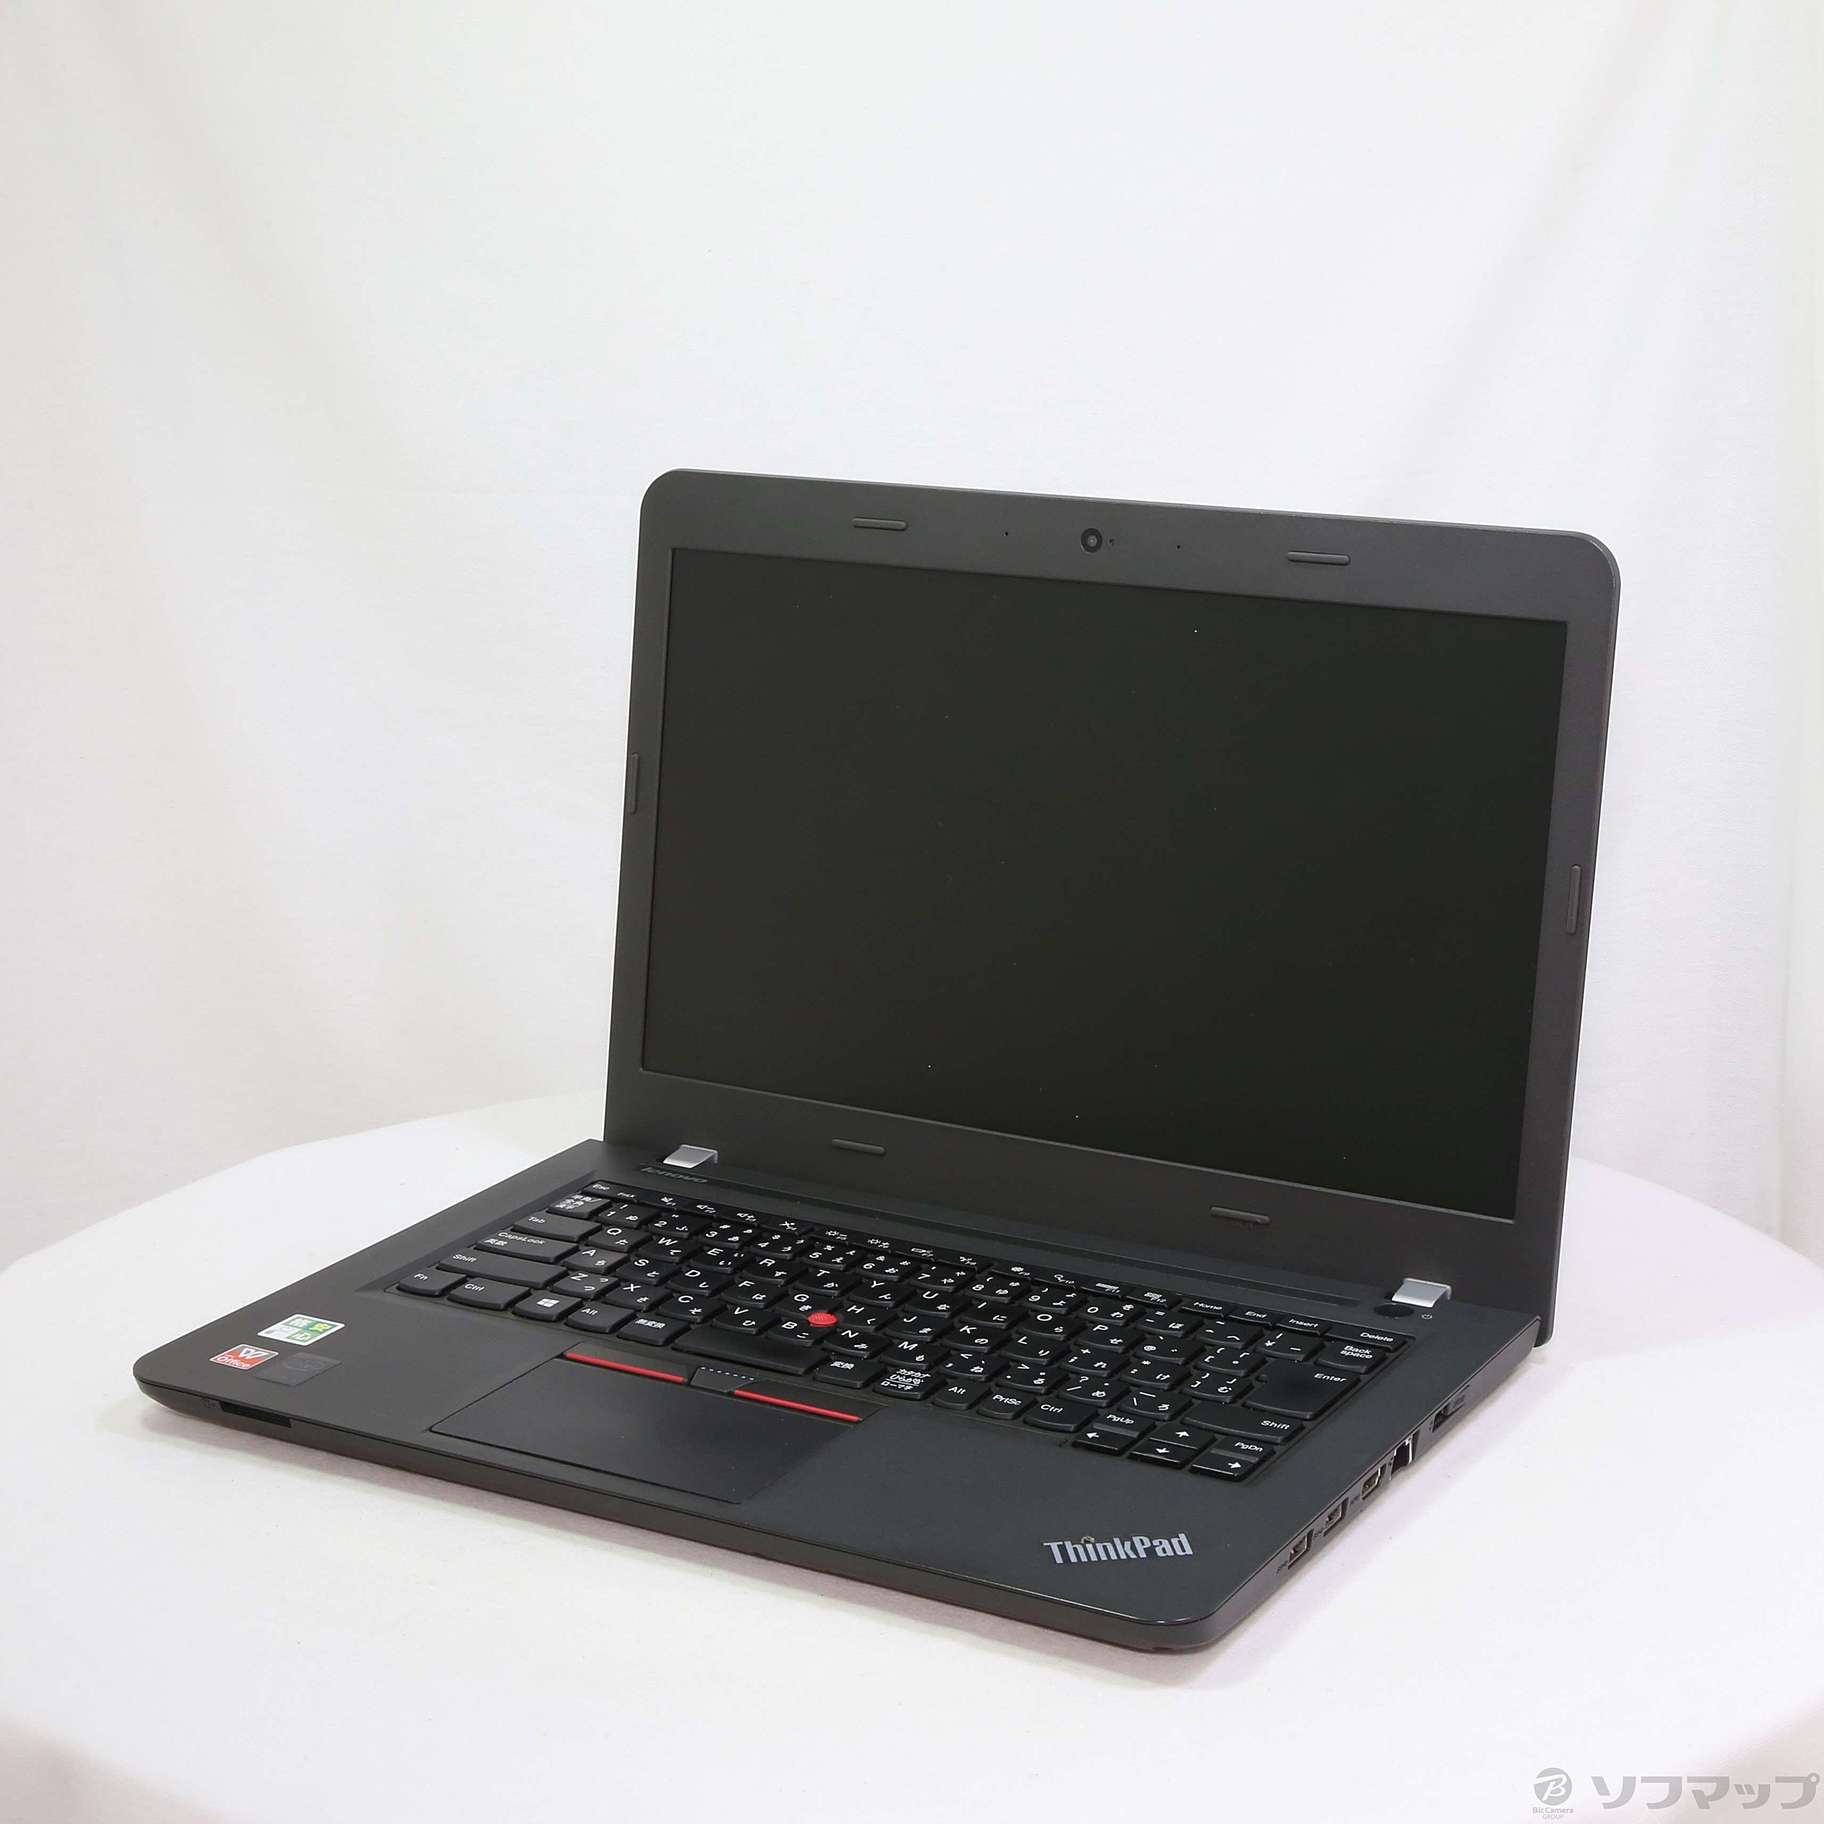 格安安心パソコン ThinkPad E450 20DCCT01WW 〔Windows 10〕